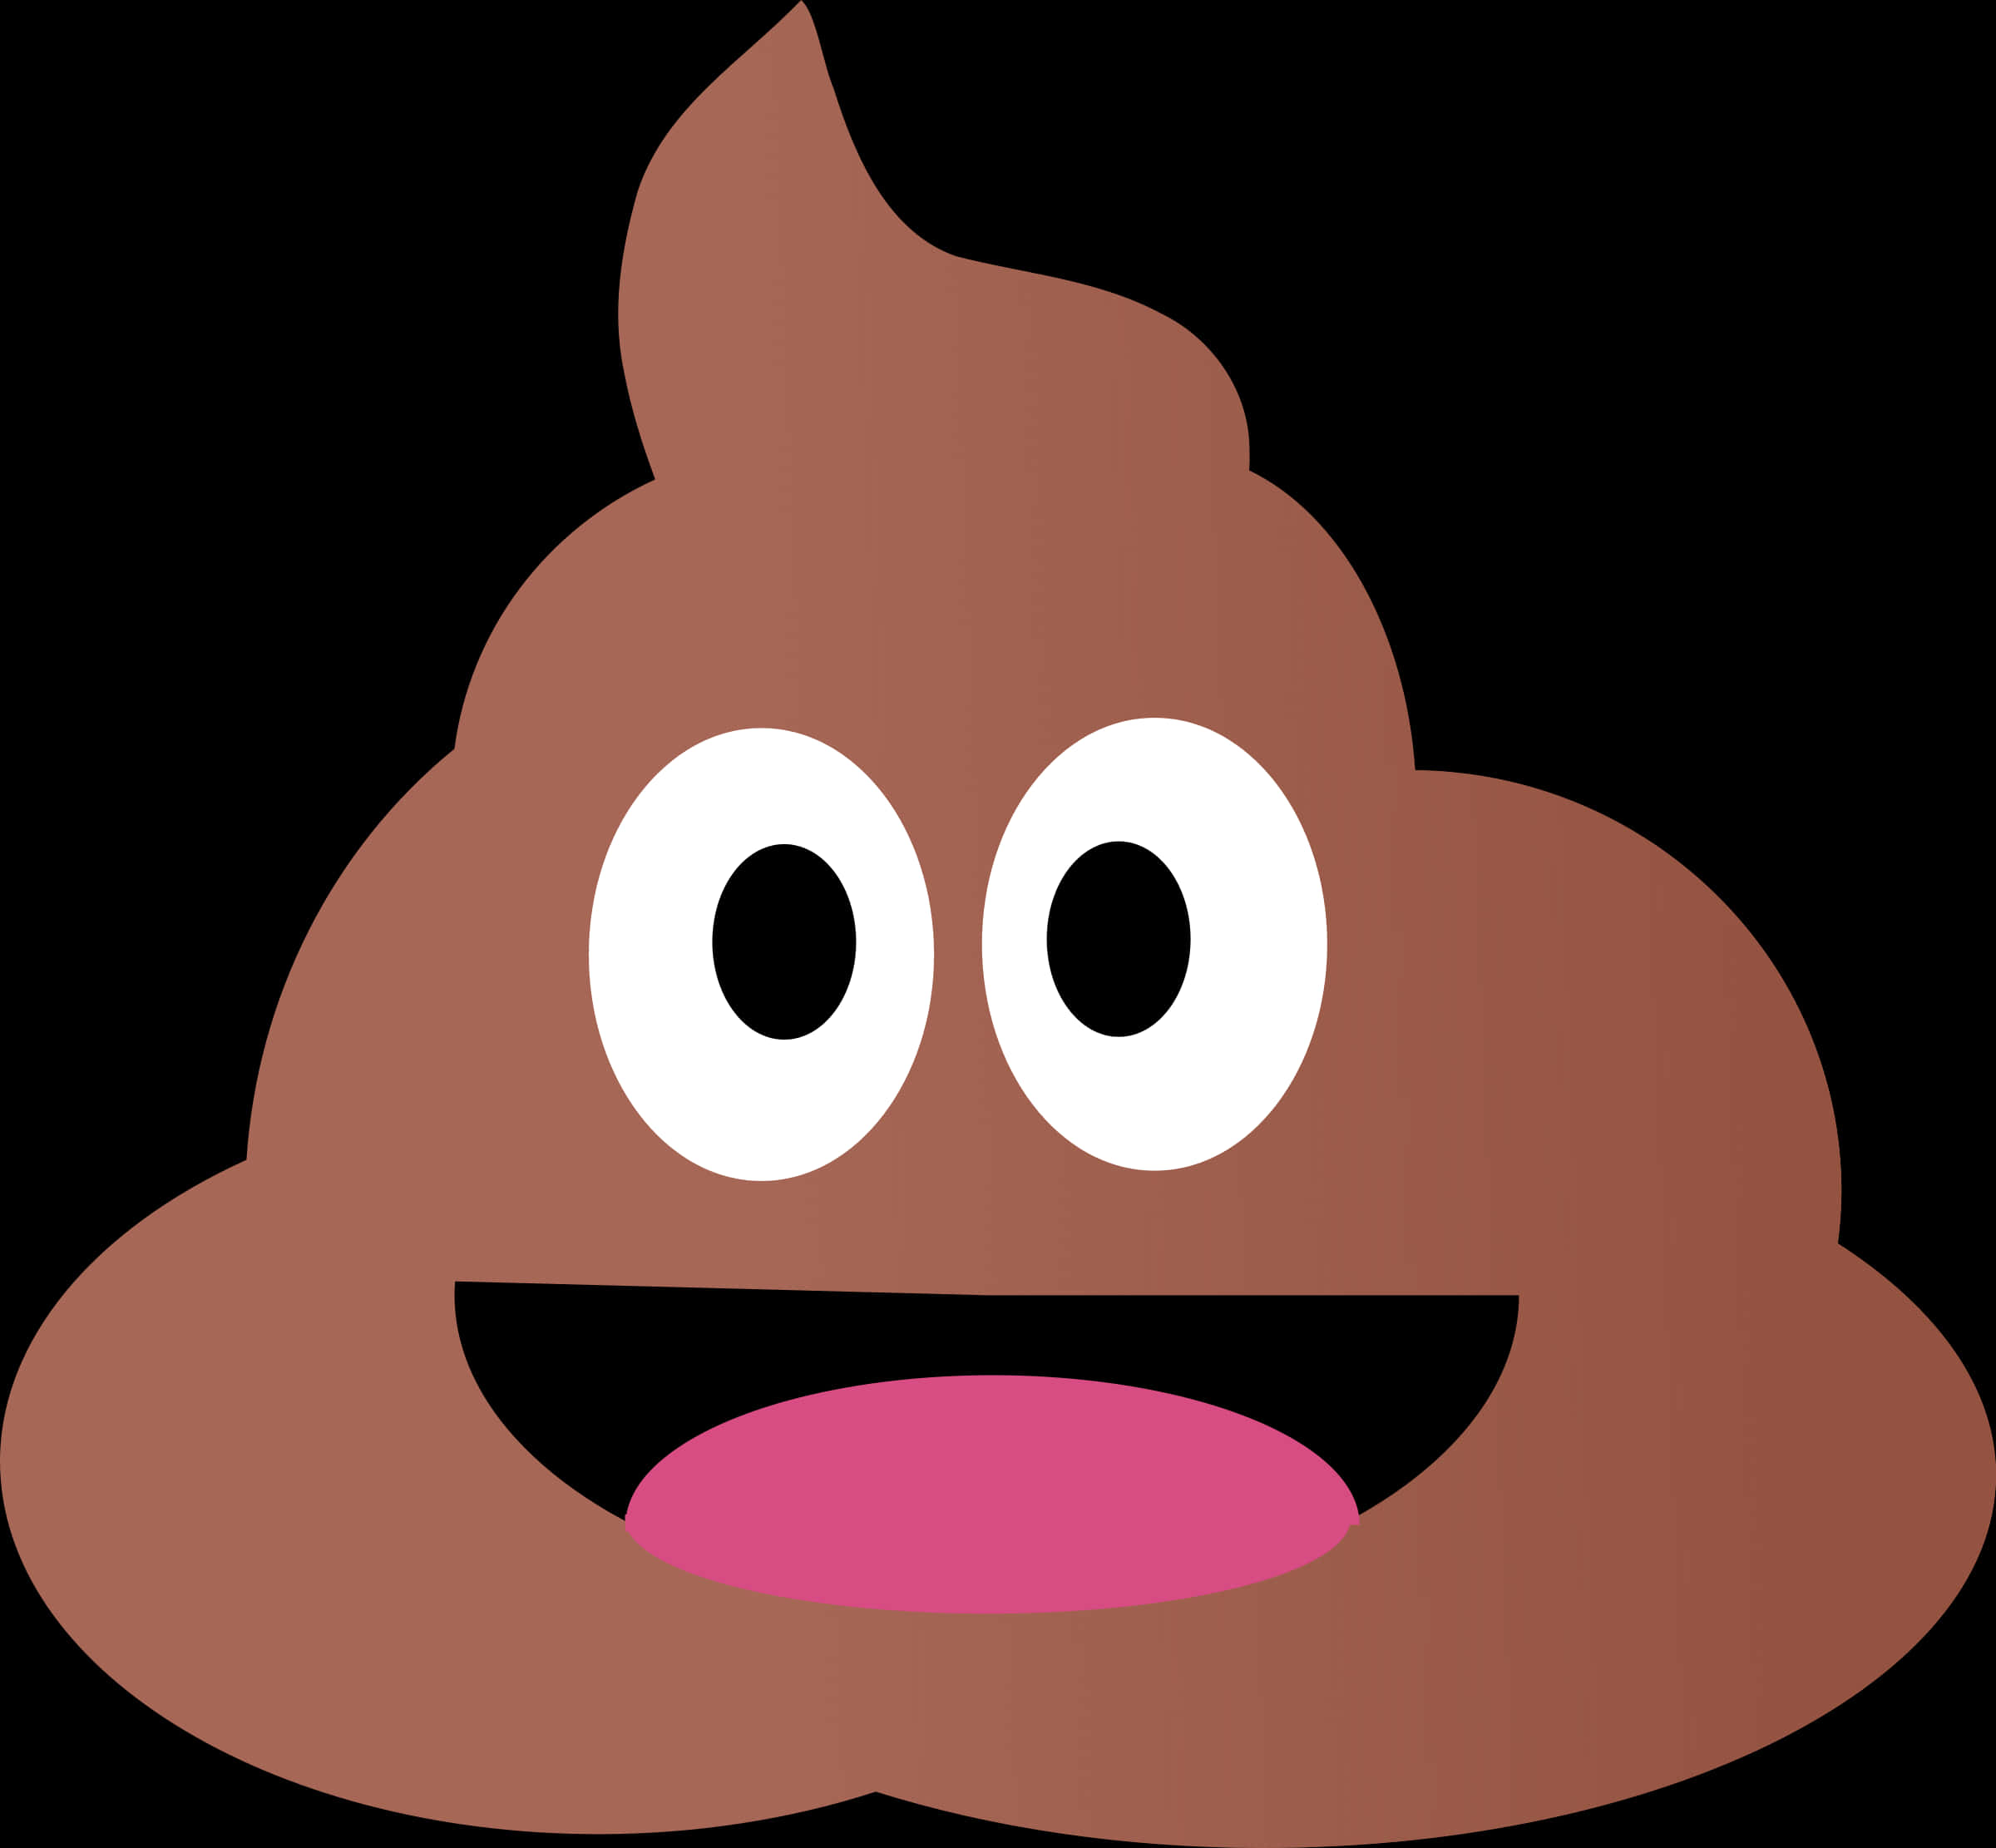 Smiling Poop Emoji Graphic PNG image